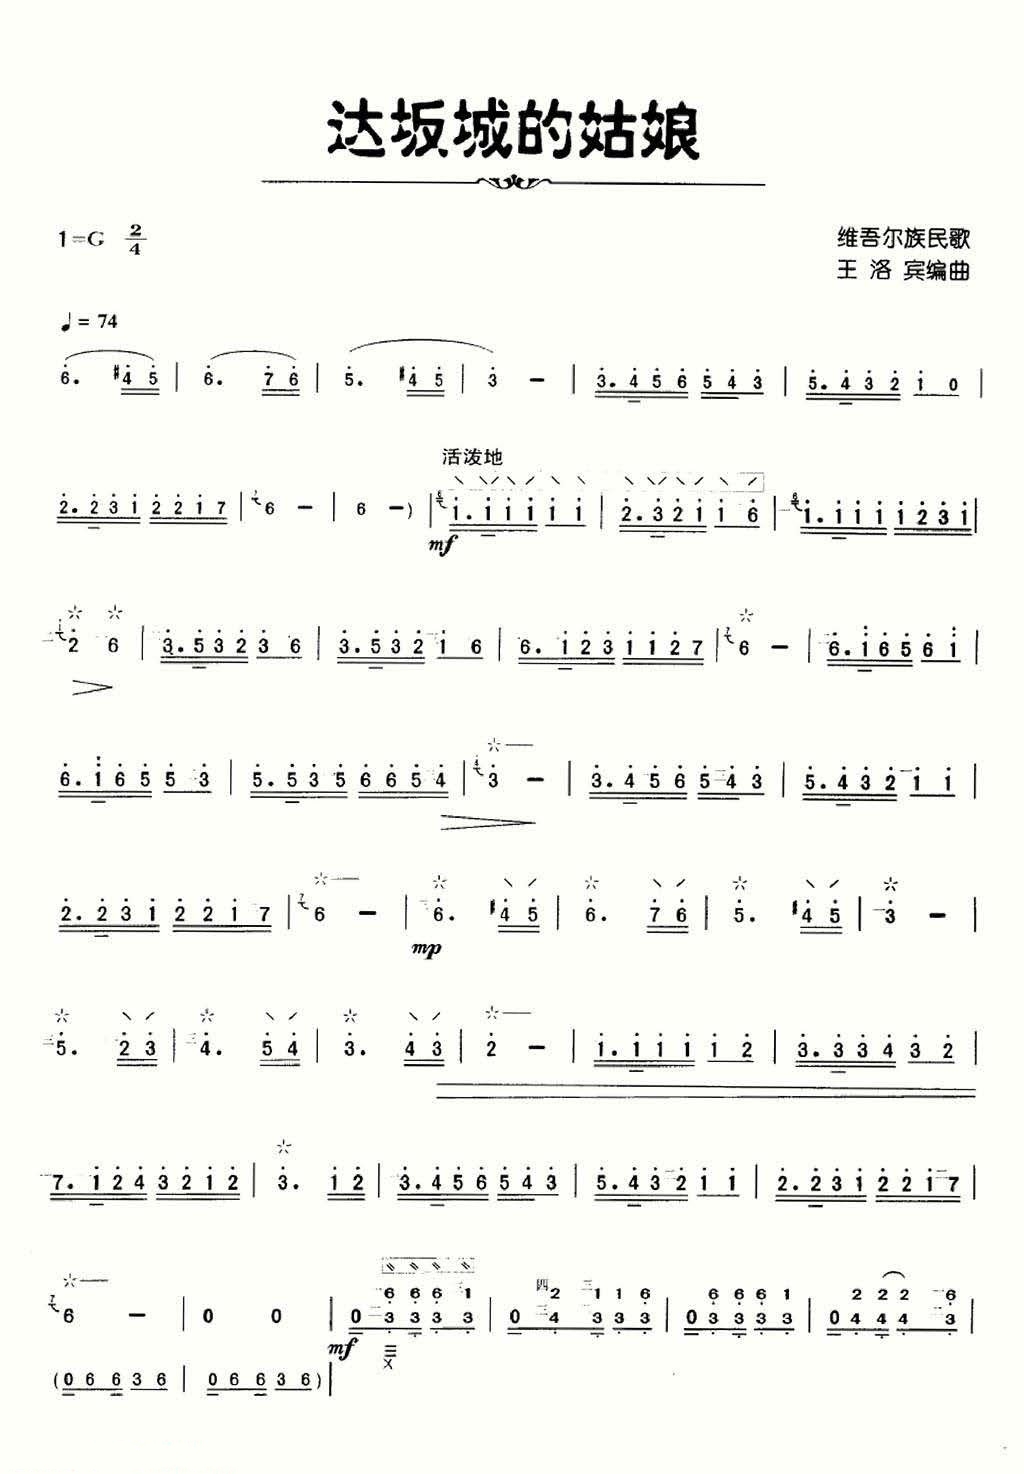 The girl of Dabancheng (Liuqin)（liuqin sheet music）